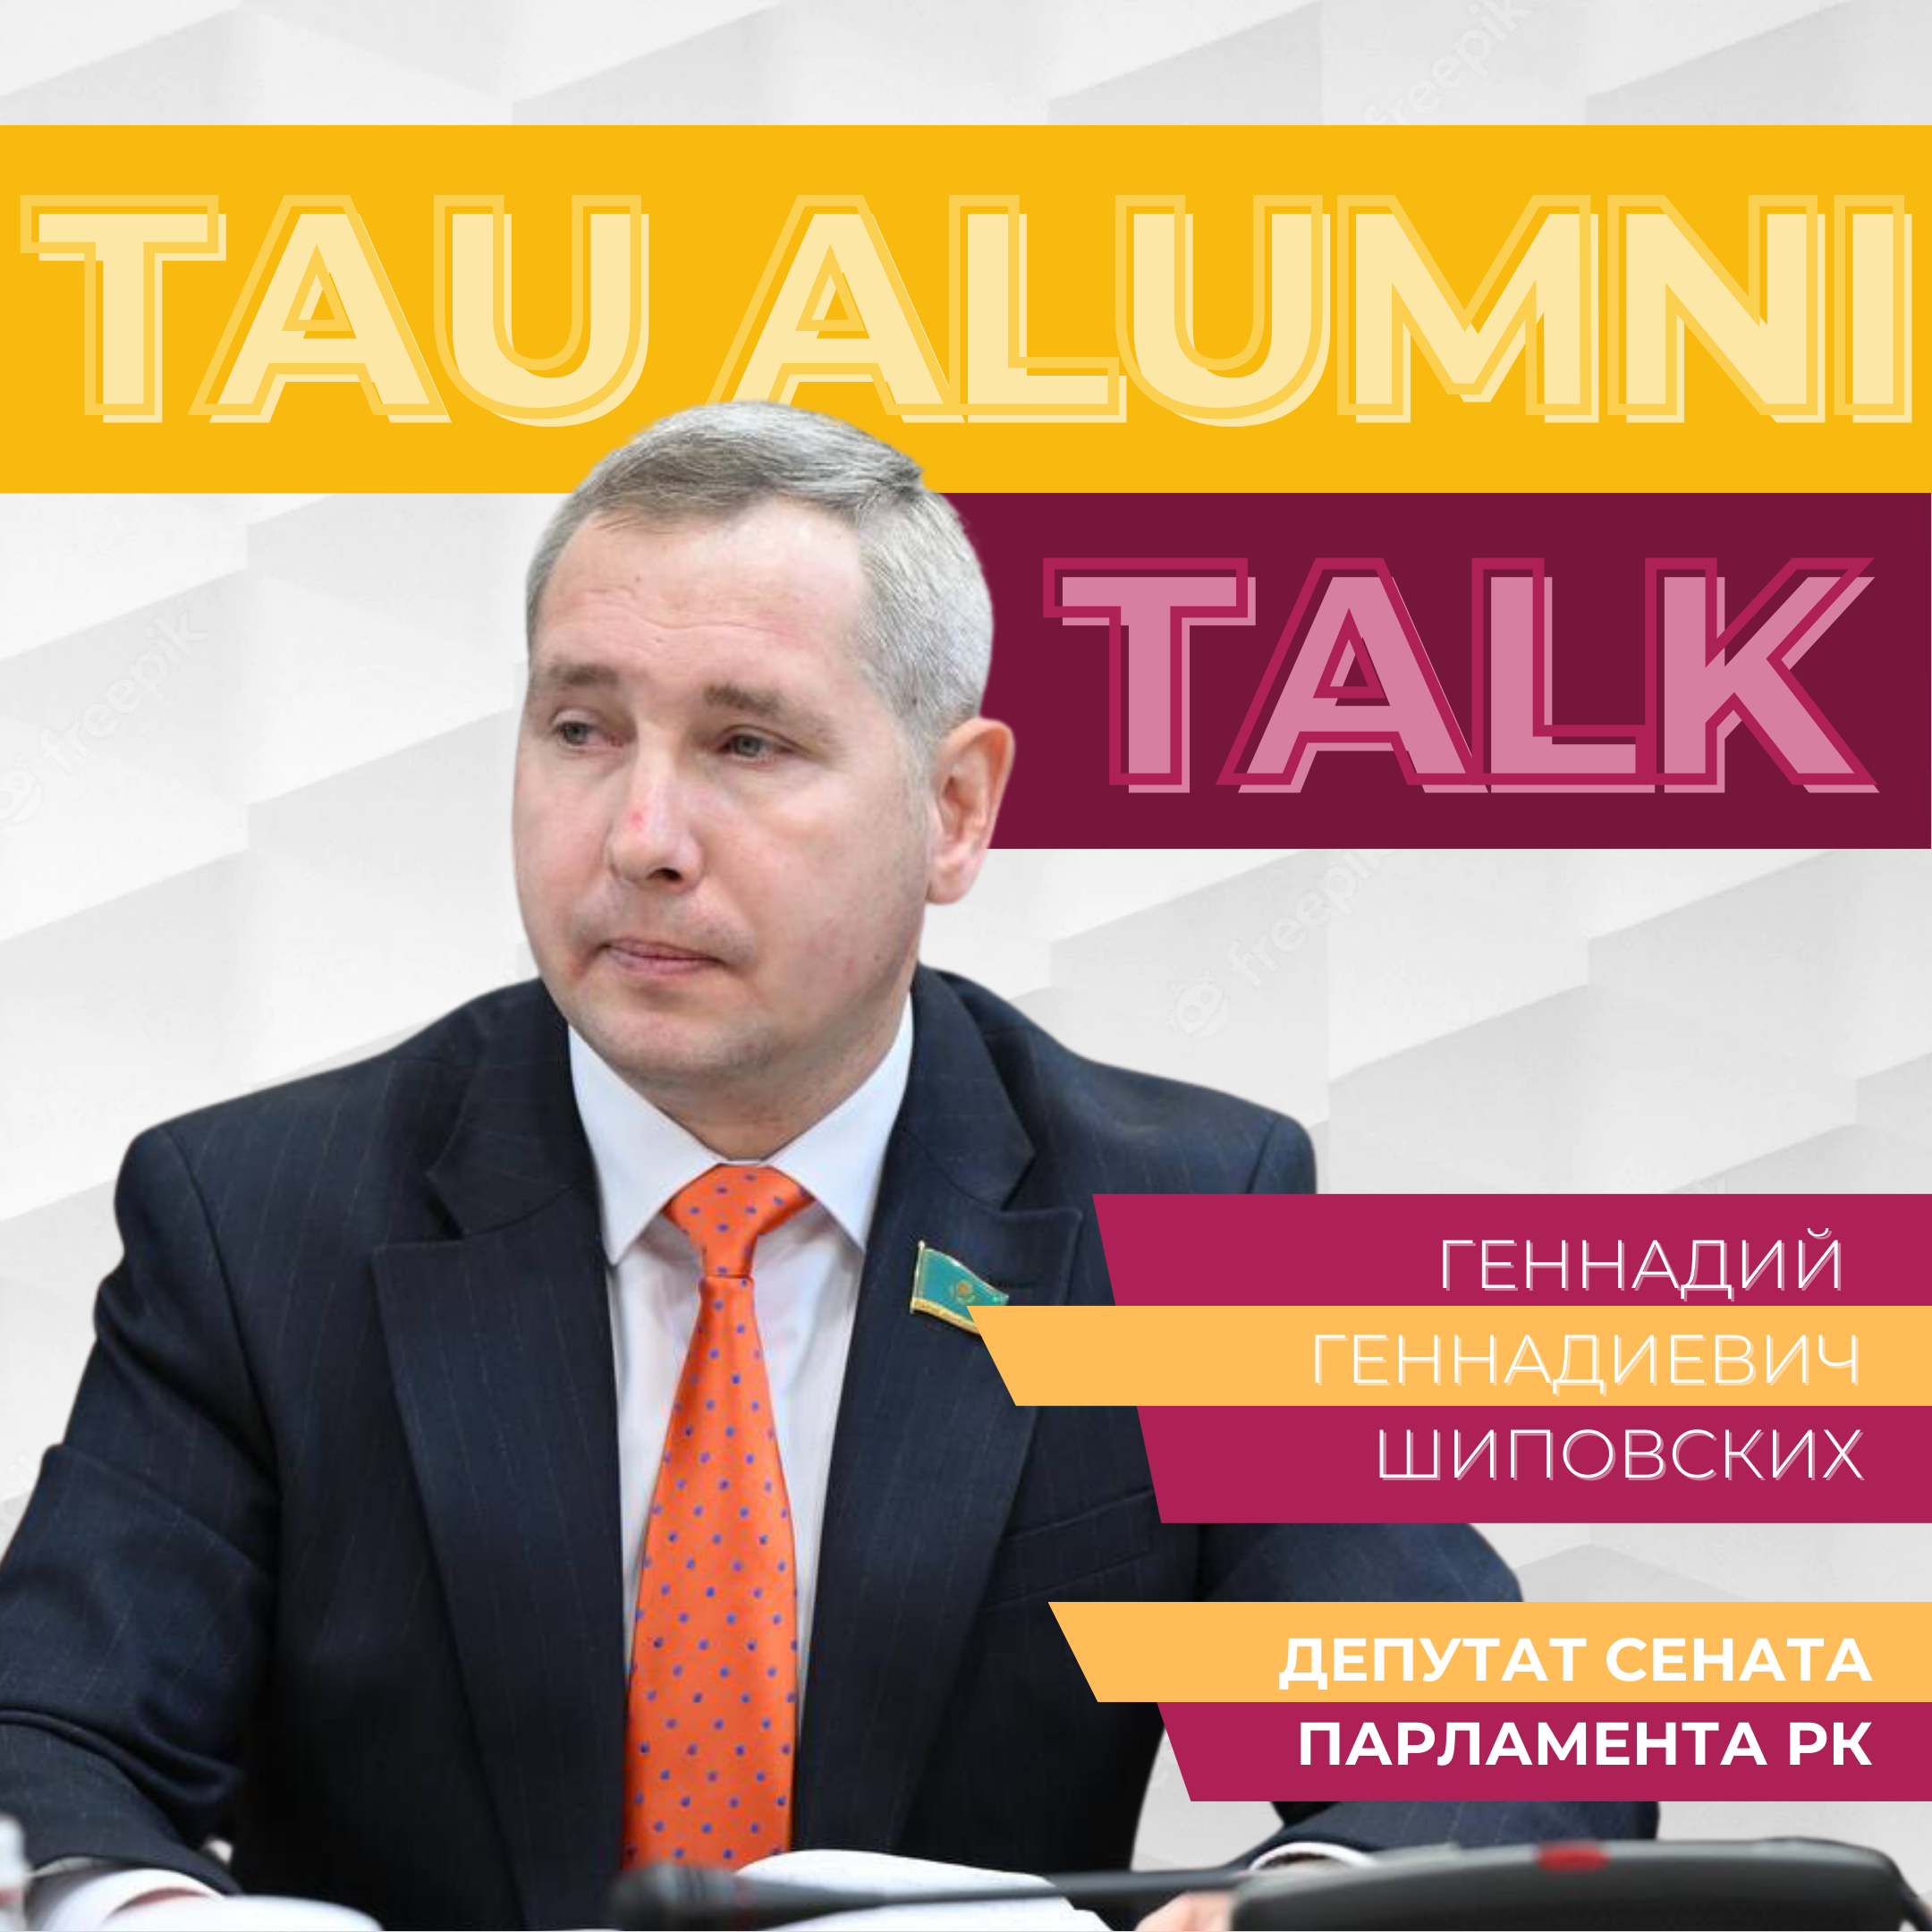 Alumni Talk с Геннадием Геннадиевичем Шиповских